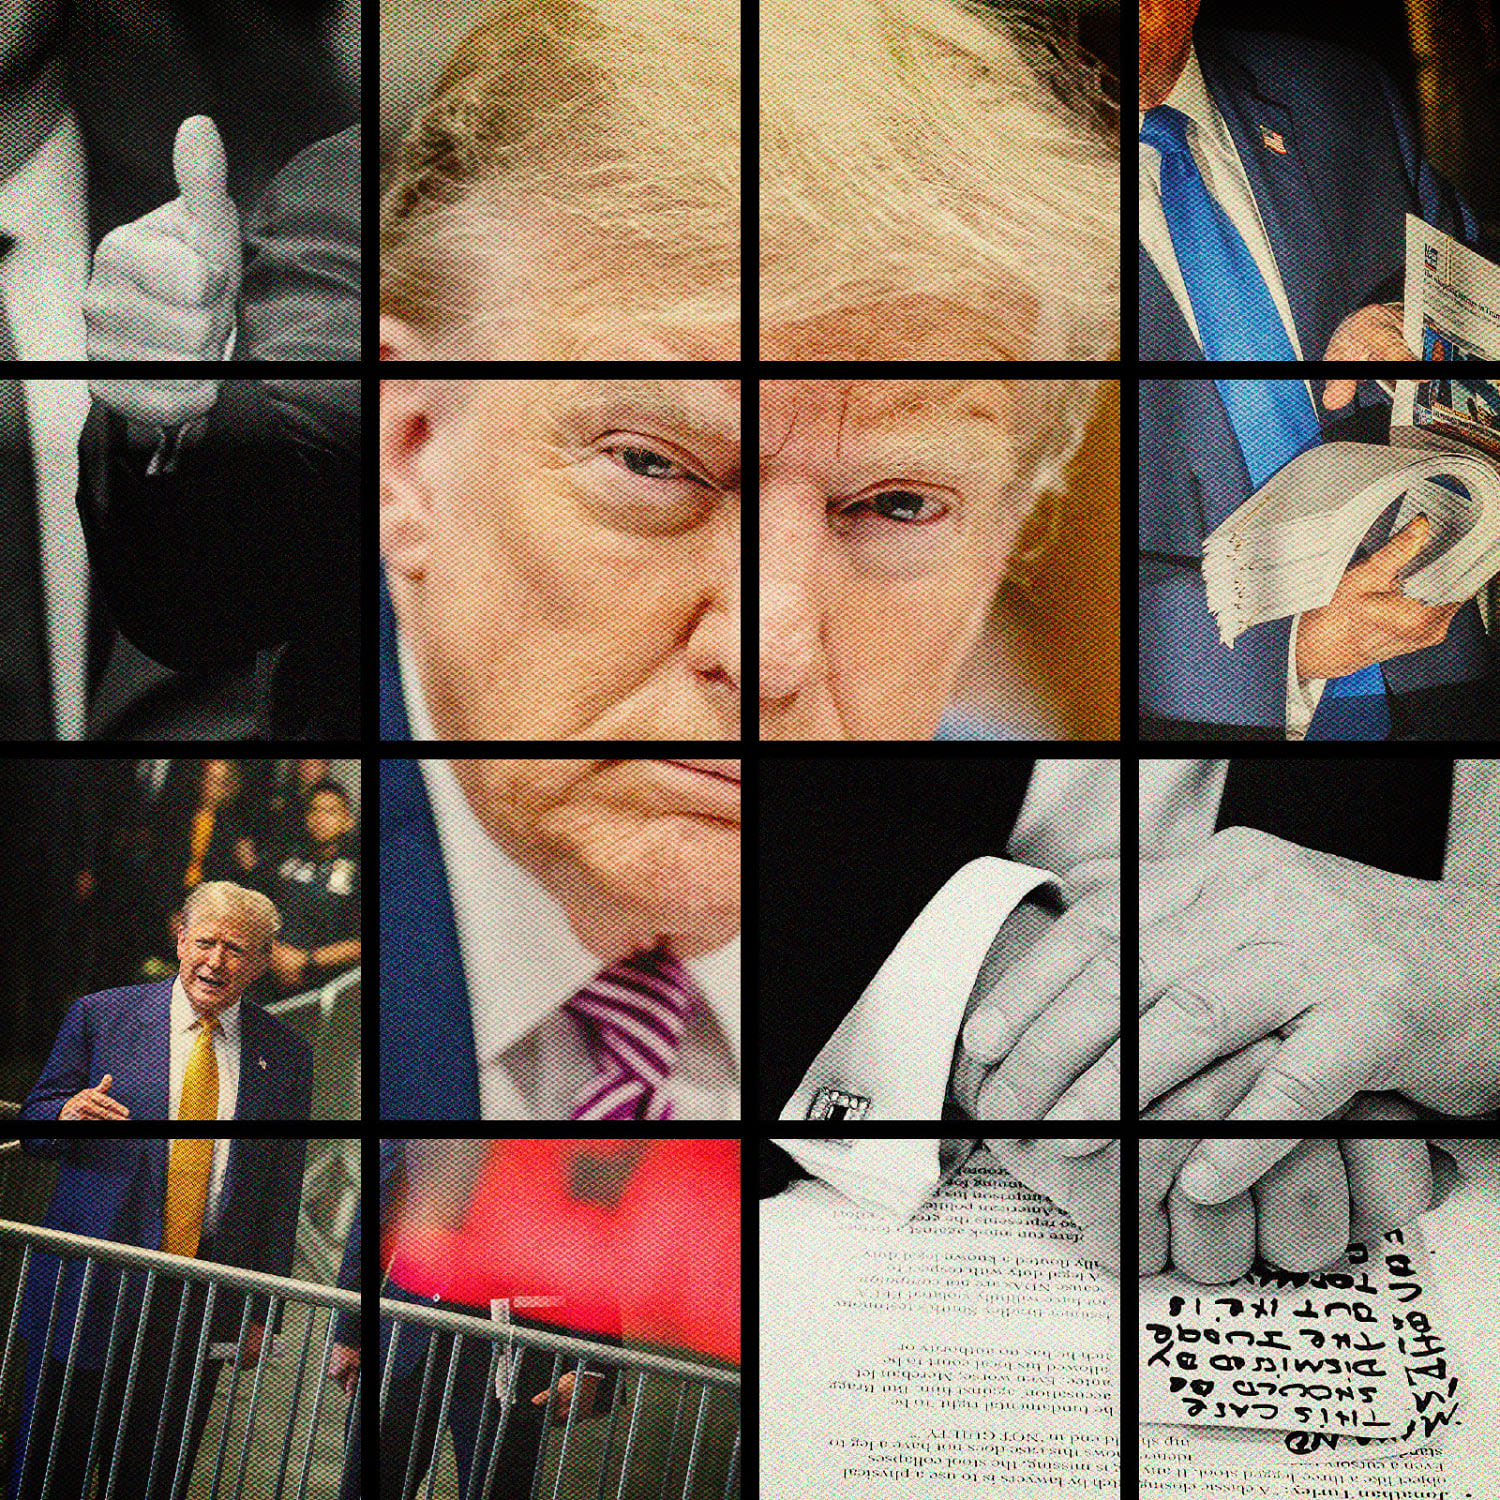 6 weeks of Trump's trial in 62 photos